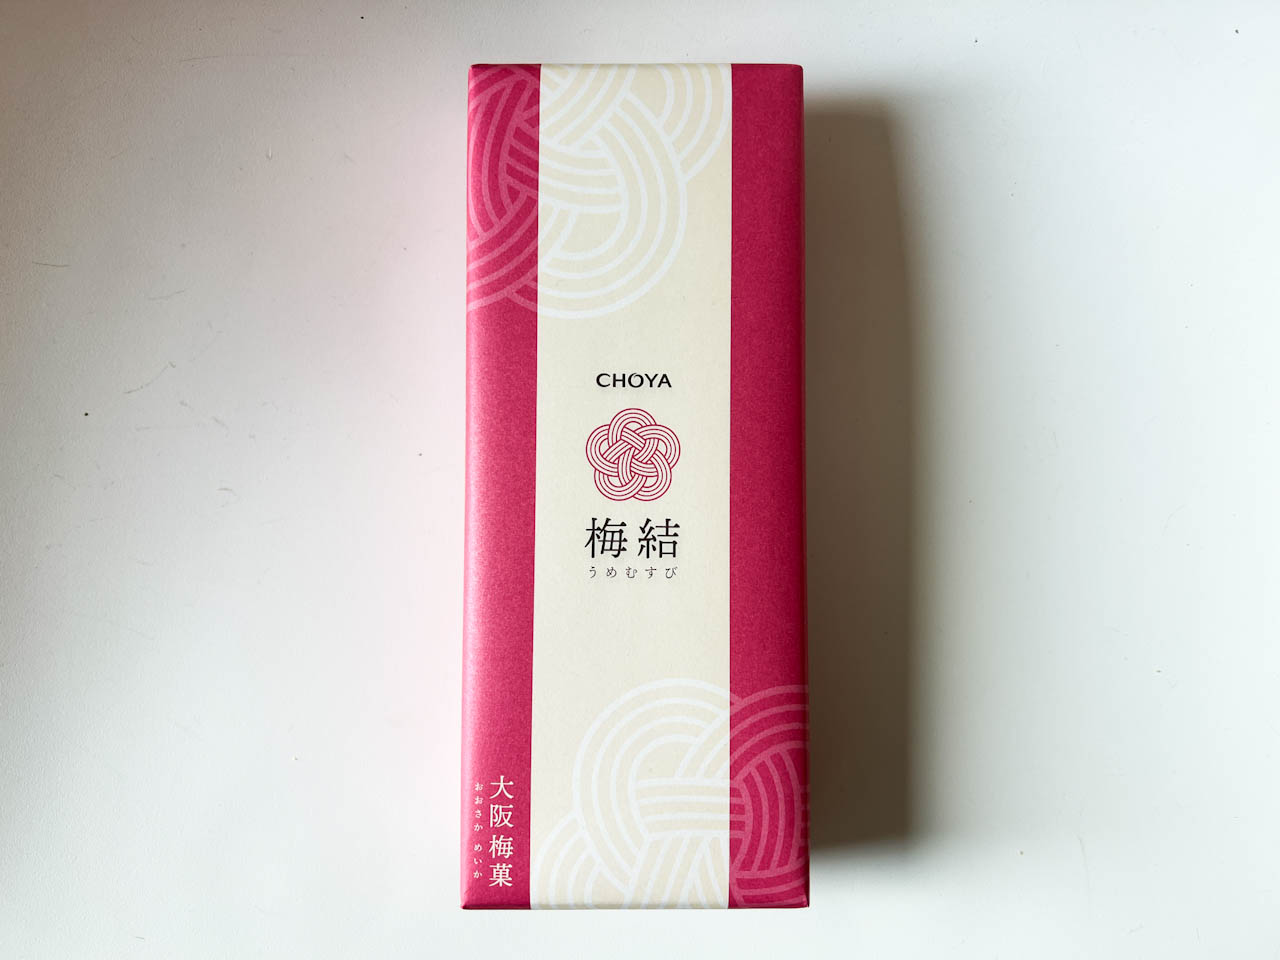 「CHOYA 梅結」は、チョーヤが提案する新しい大阪土産